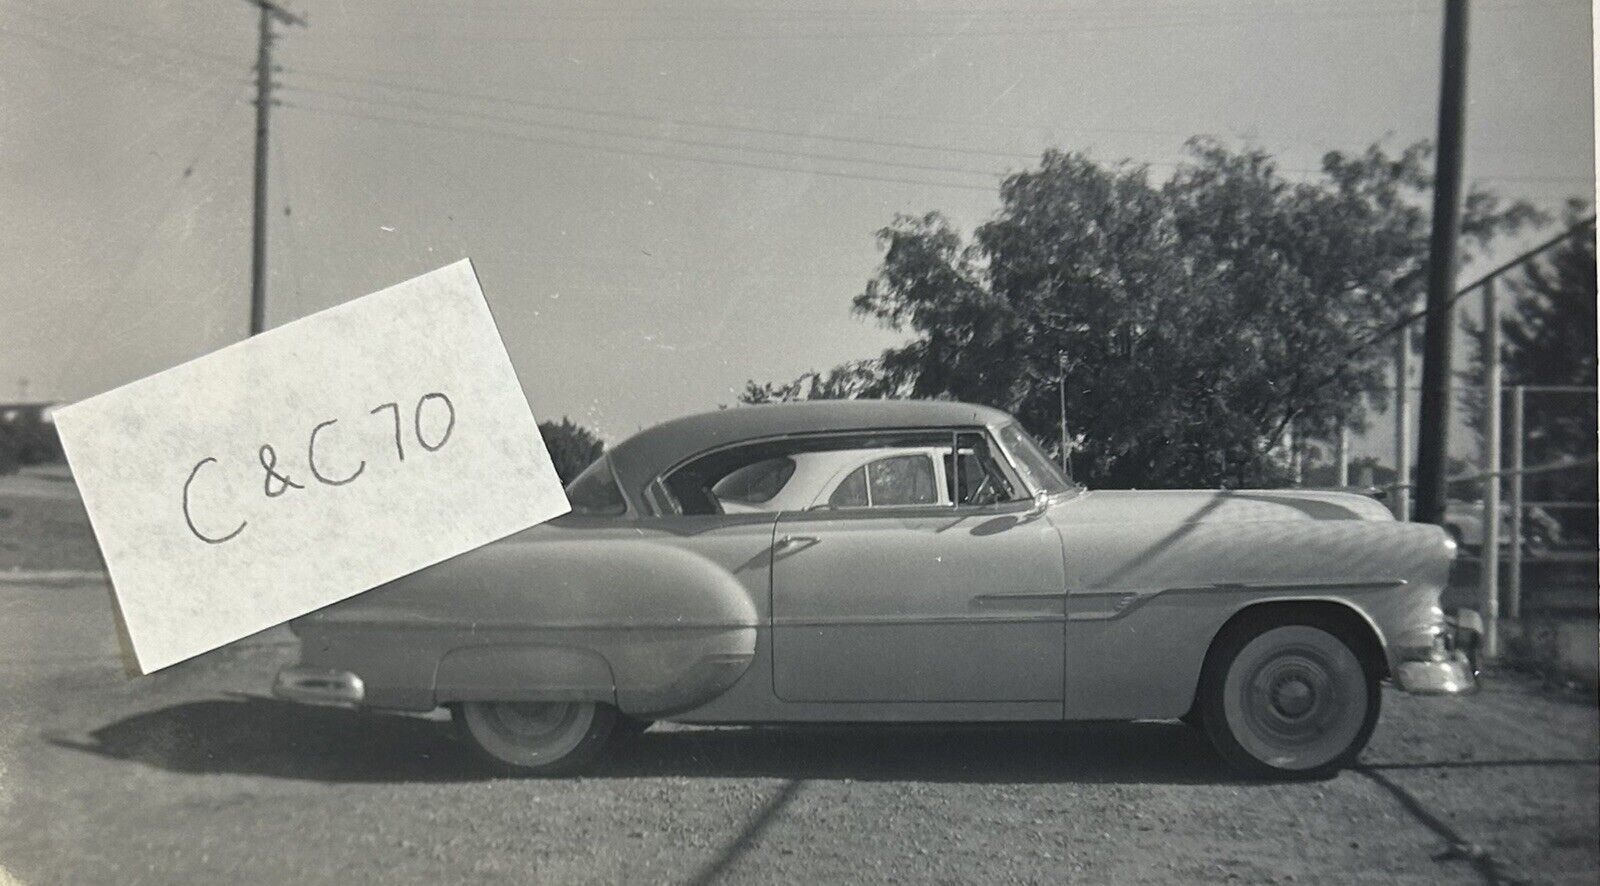 1953 Pontiac Original Black & White Photo, Vintage Car Photograph, Automobilia